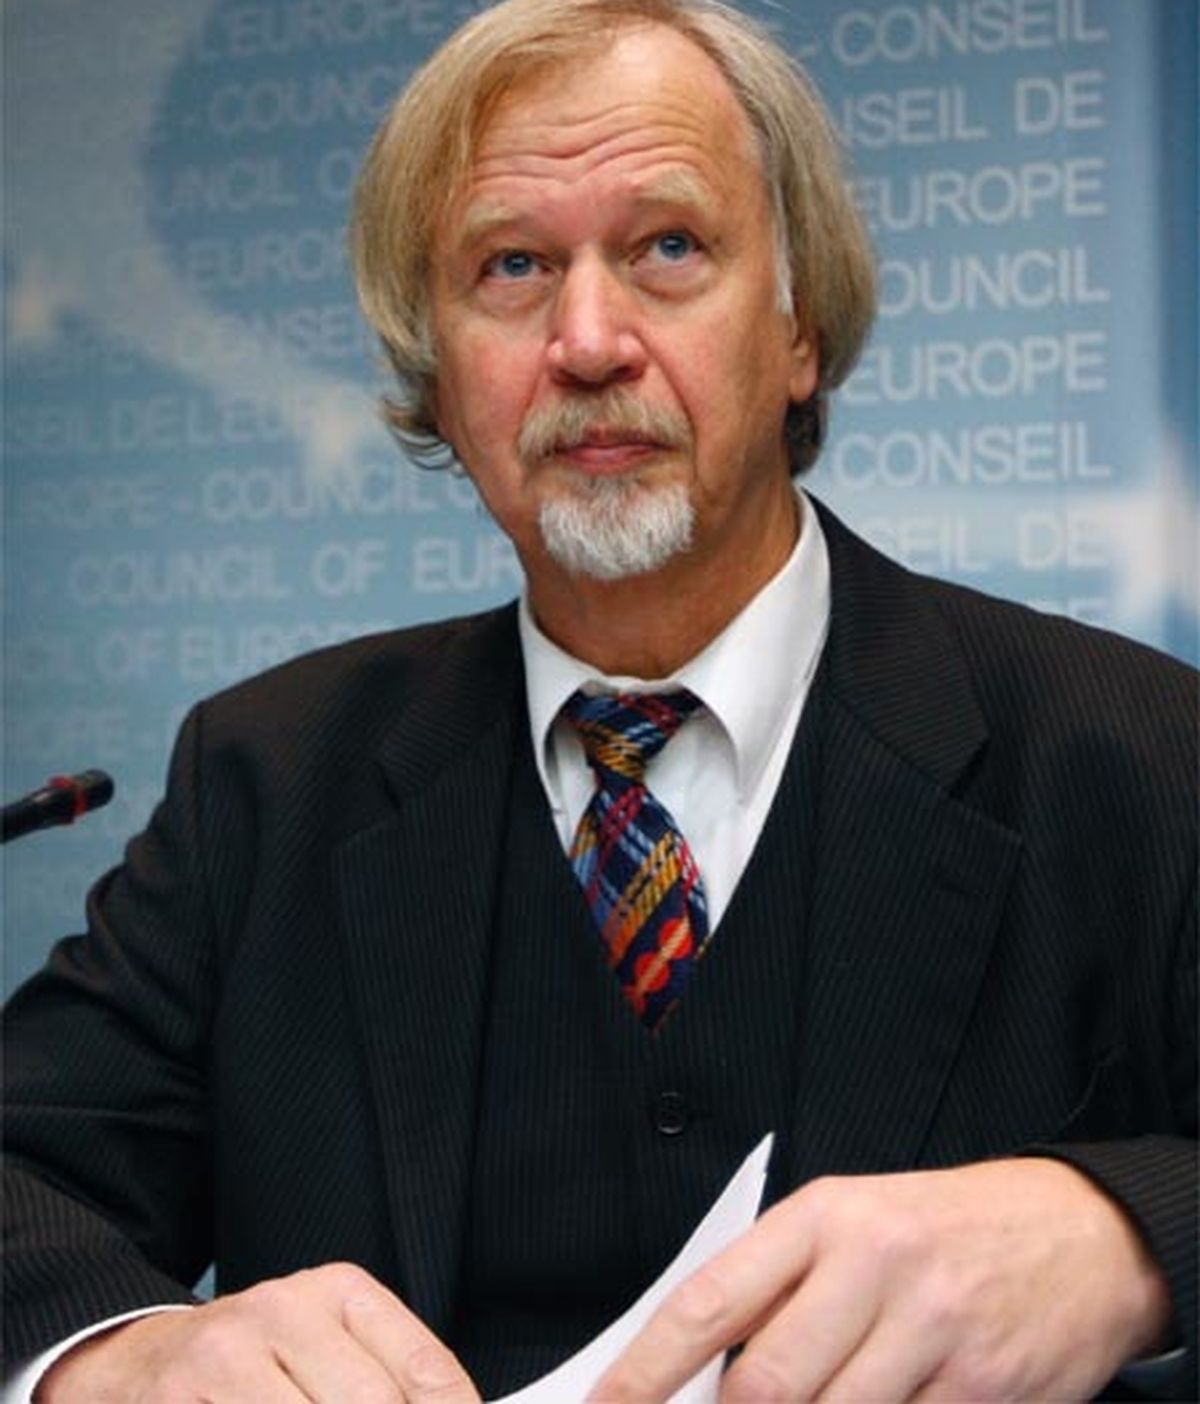 El máximo representante de la Comisión de Salud del Consejo de Europa, Wolfgang Wodarg